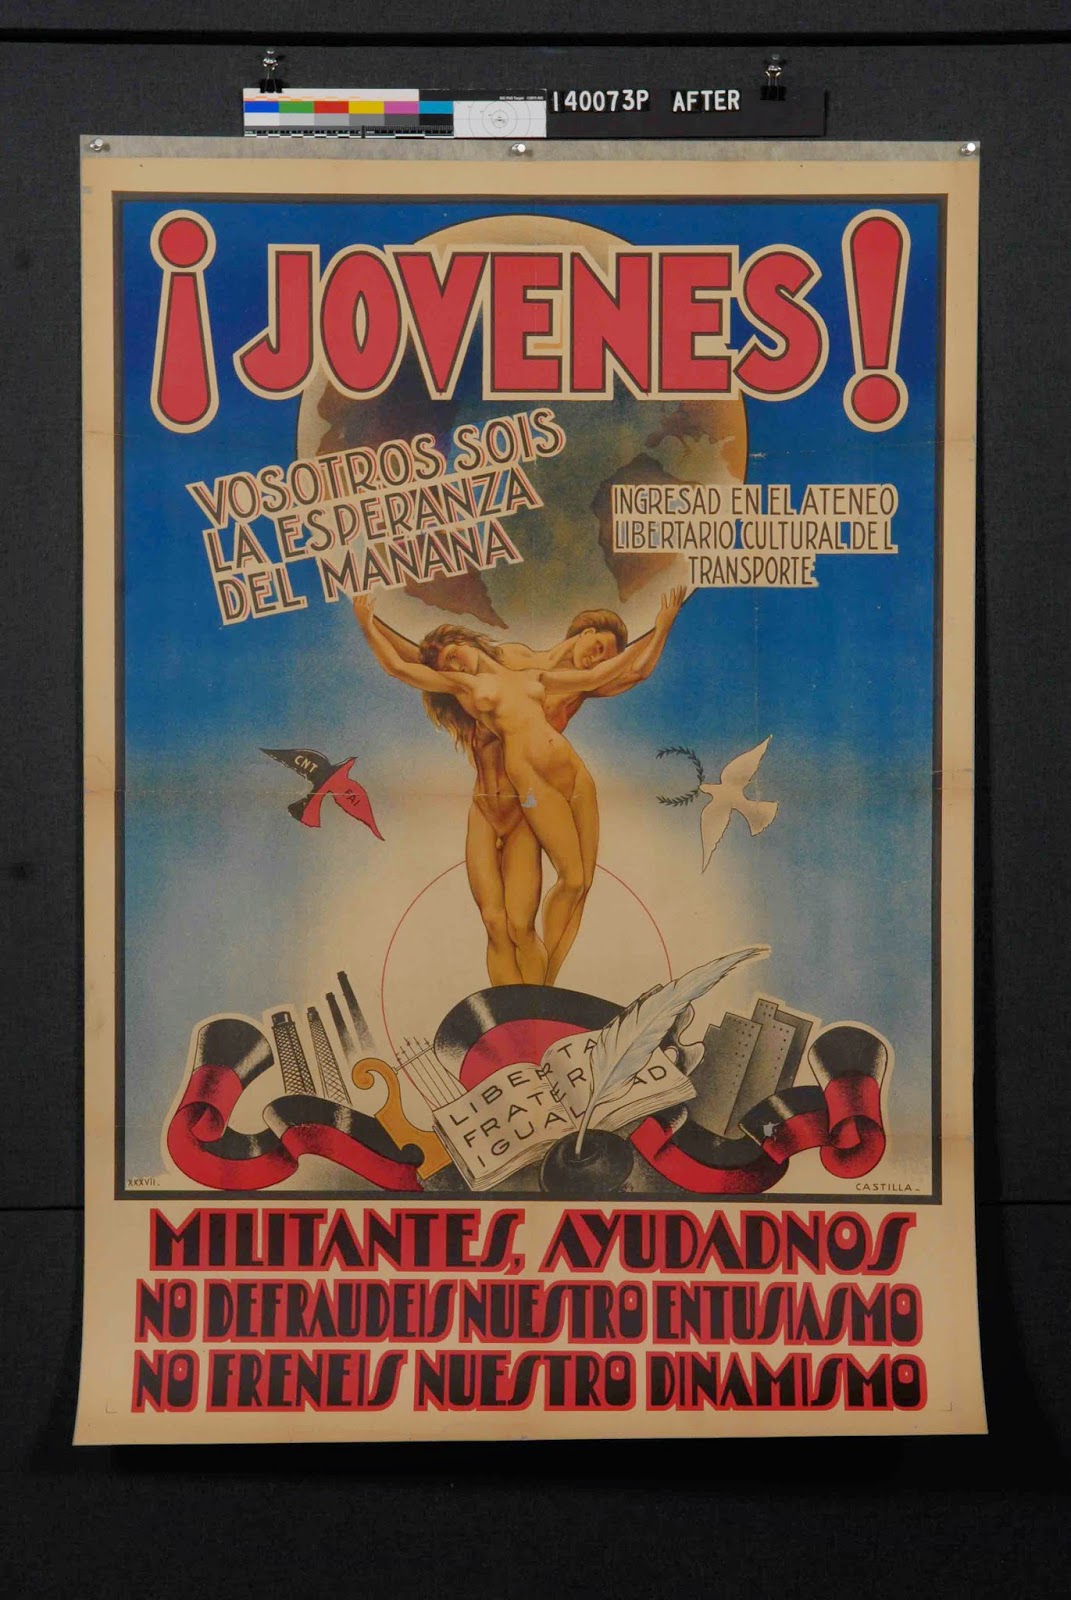 Jovenes poster after restoration